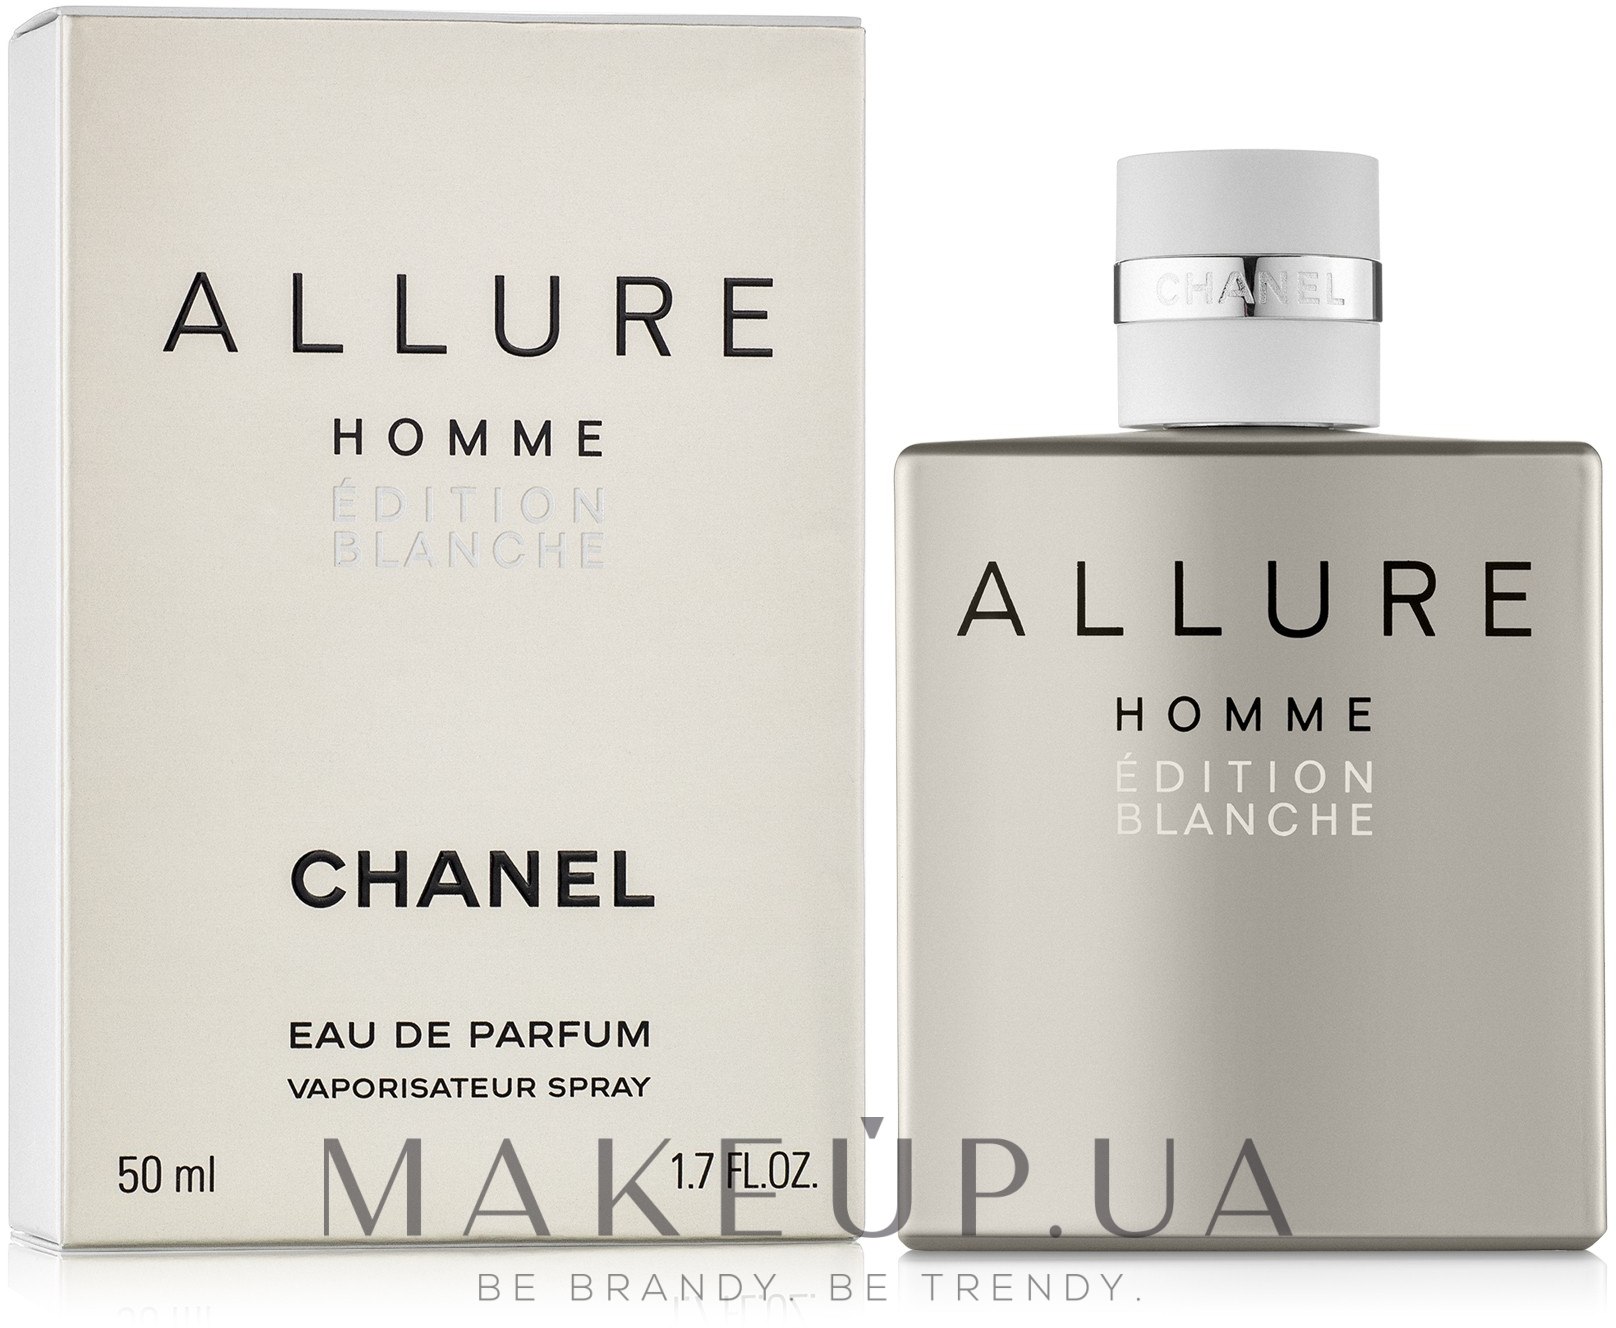 Allure homme chanel для мужчин. Chanel Allure homme Edition Blanche. Allure homme Edition Blanche 100 ml. Шанель Аллюр мужские. Шанель Аллюр Парфюм.